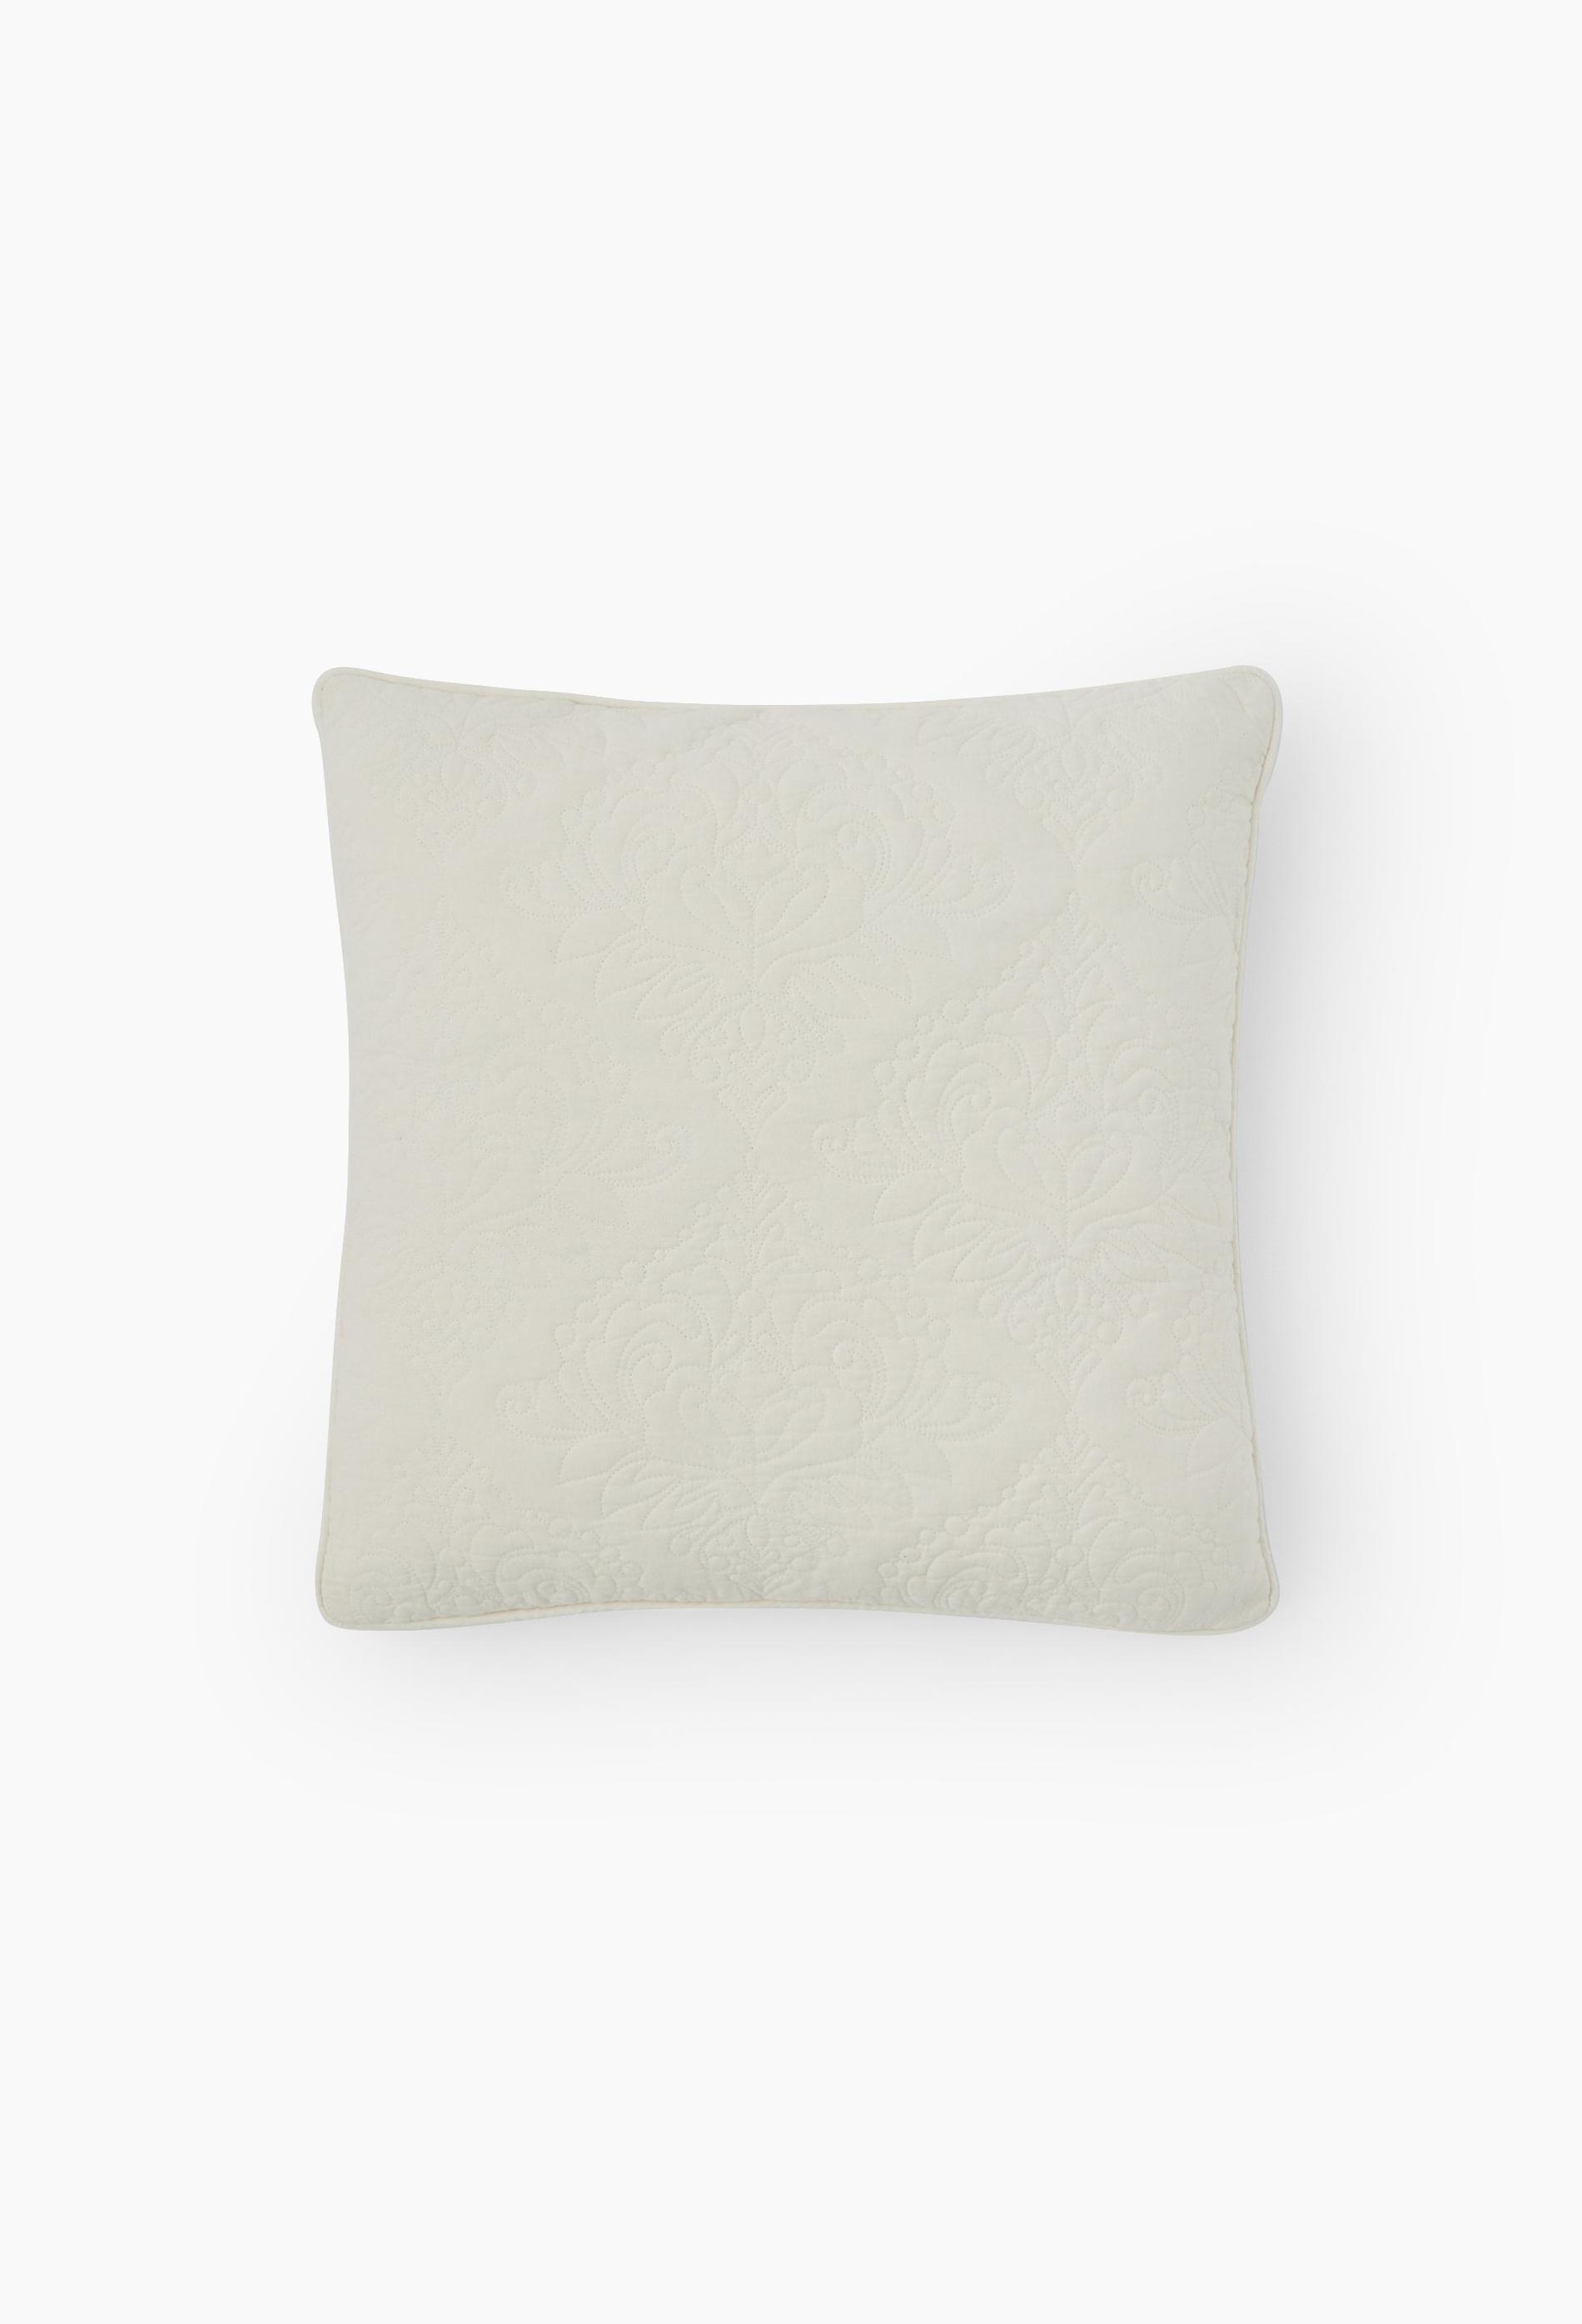 Monoprix Maison - Coussin blanc matelassé arabesque, 50x50cm, coton